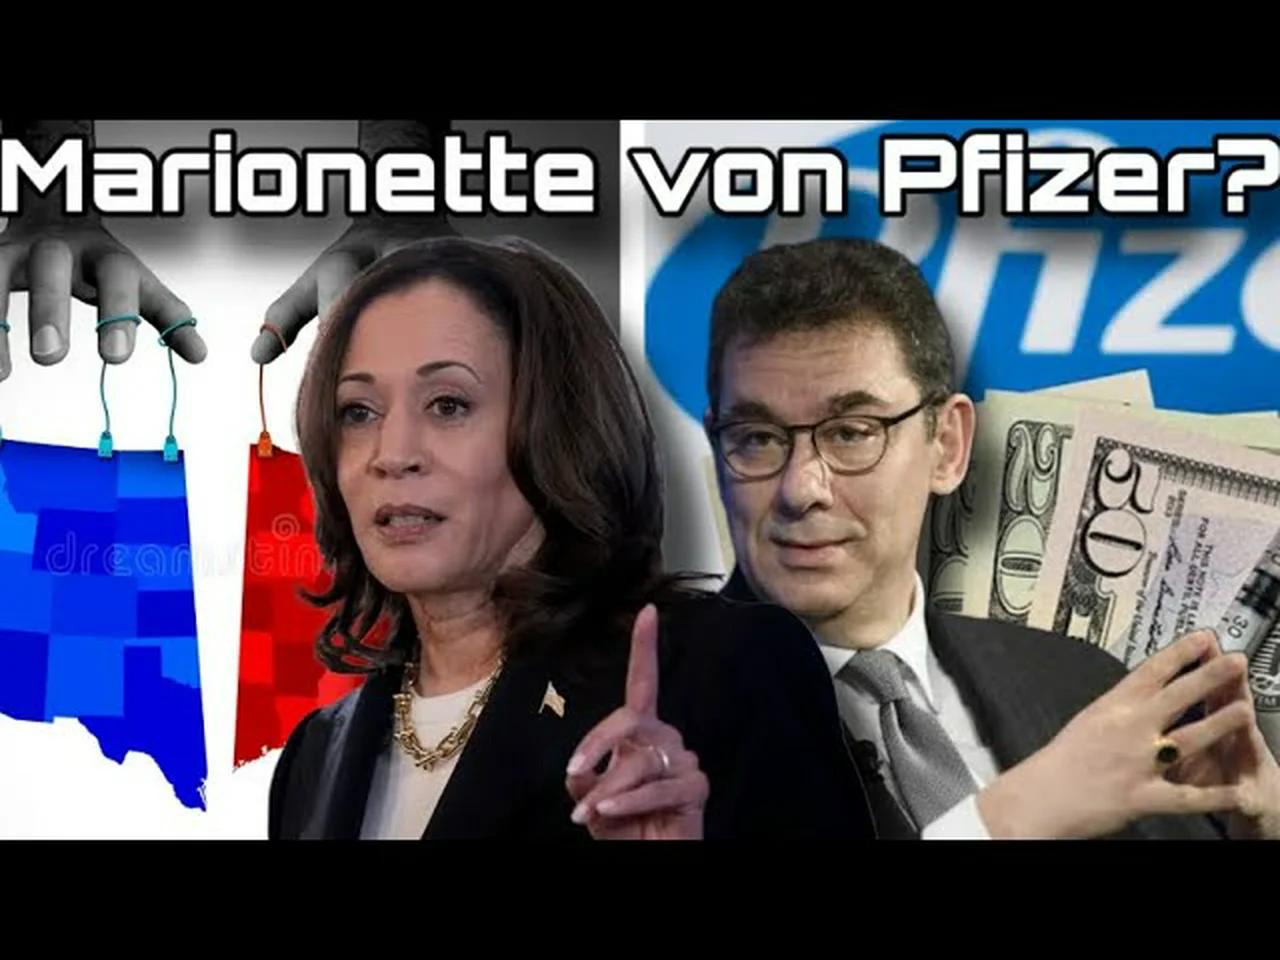 Marionette von Pfizer: Deshalb soll Harris Präsidentin werden